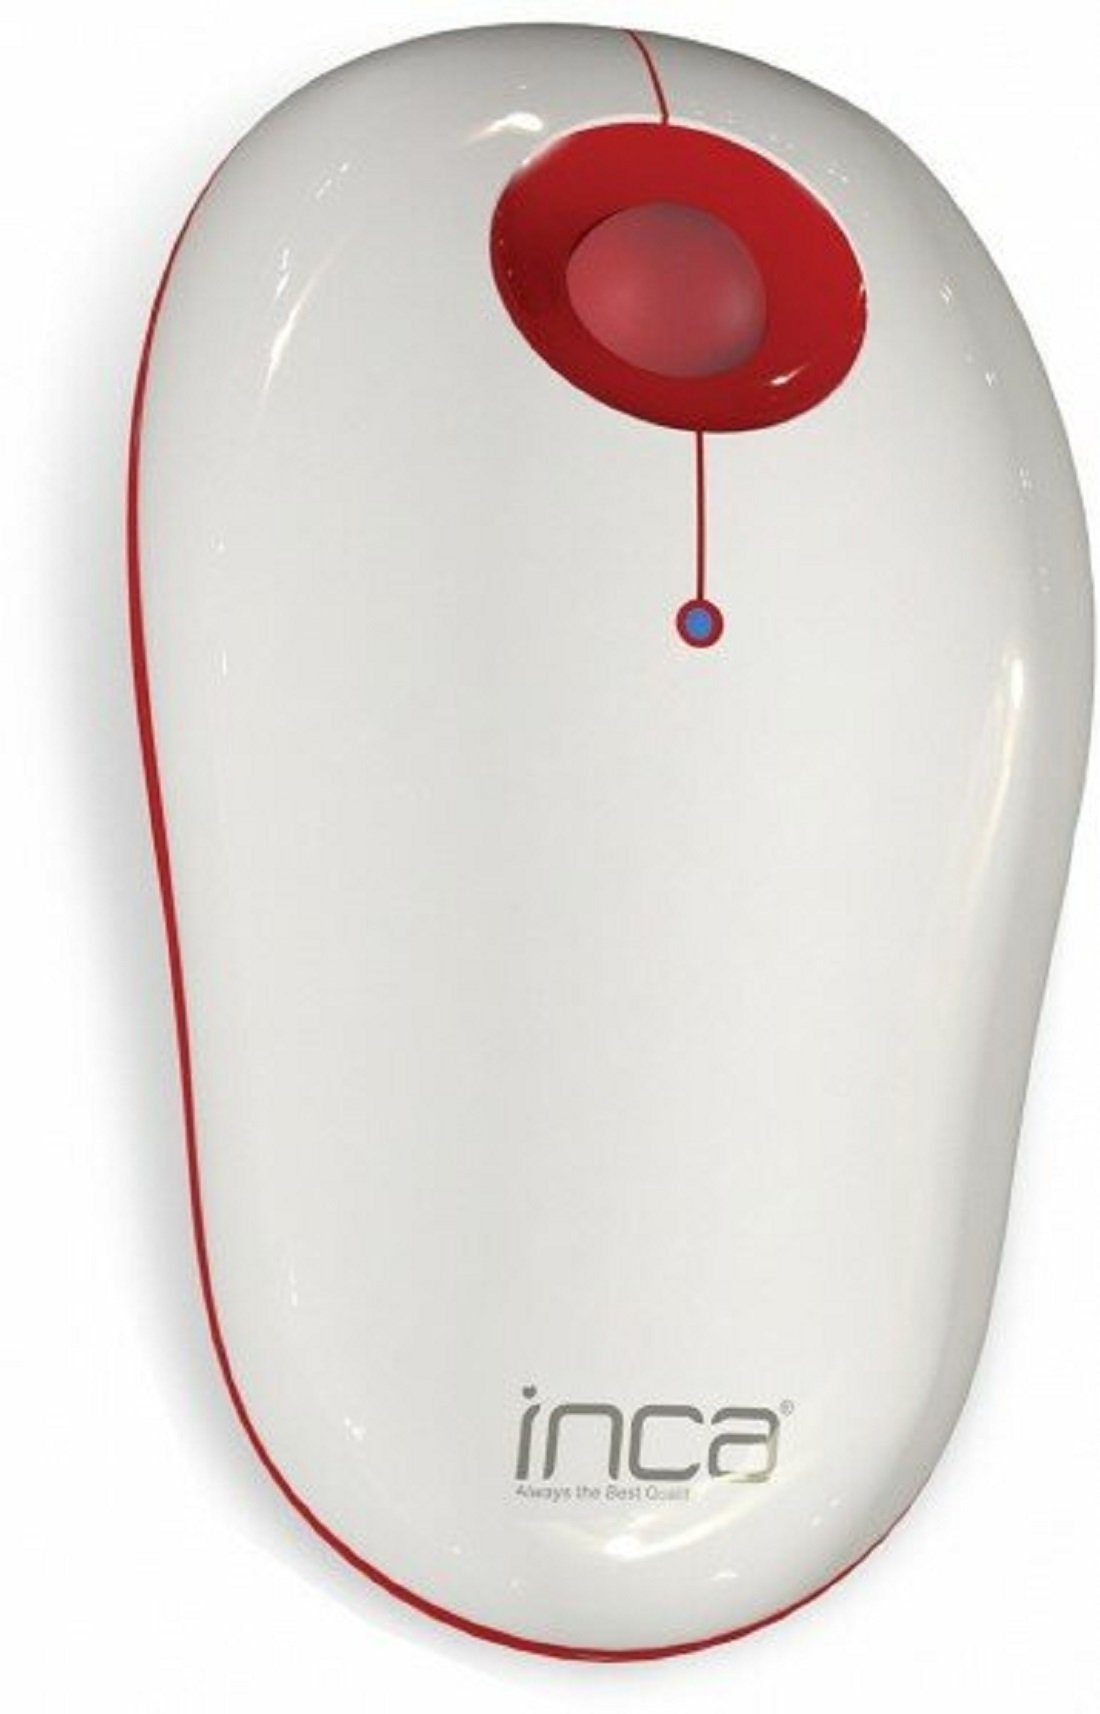 COFI Weiß 1453 Maus USB Rot ergonomische Maus Empfänger Touch Optische / Ergonomischer Wireless